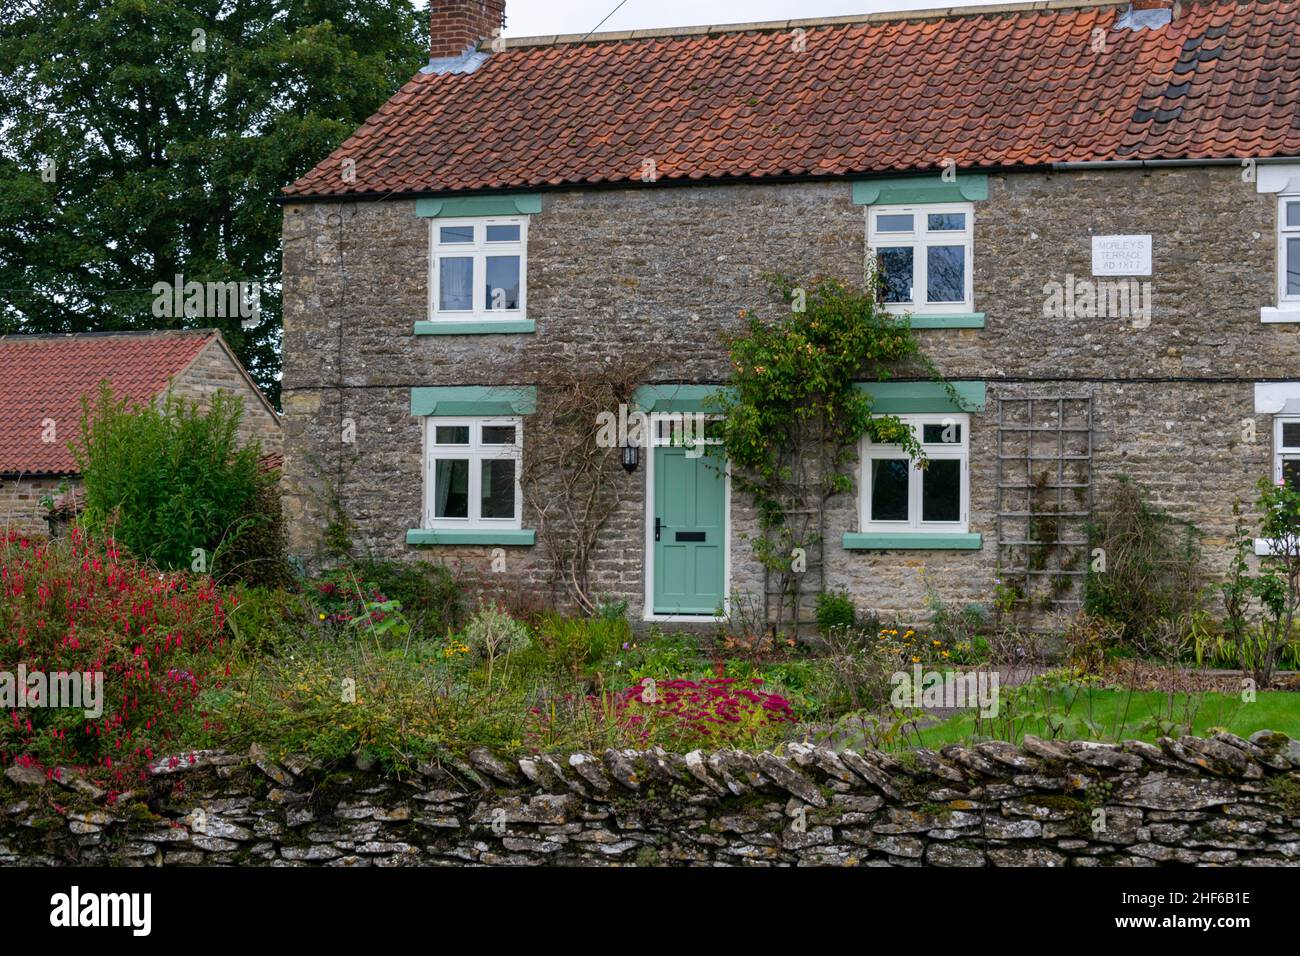 Cropton, Großbritannien - 5th. Oktober 2019: Malerische Postkarte des schönen ländlichen Dorfes Cropton, England. Häuschen und Steinhäuser, blühende Garde Stockfoto